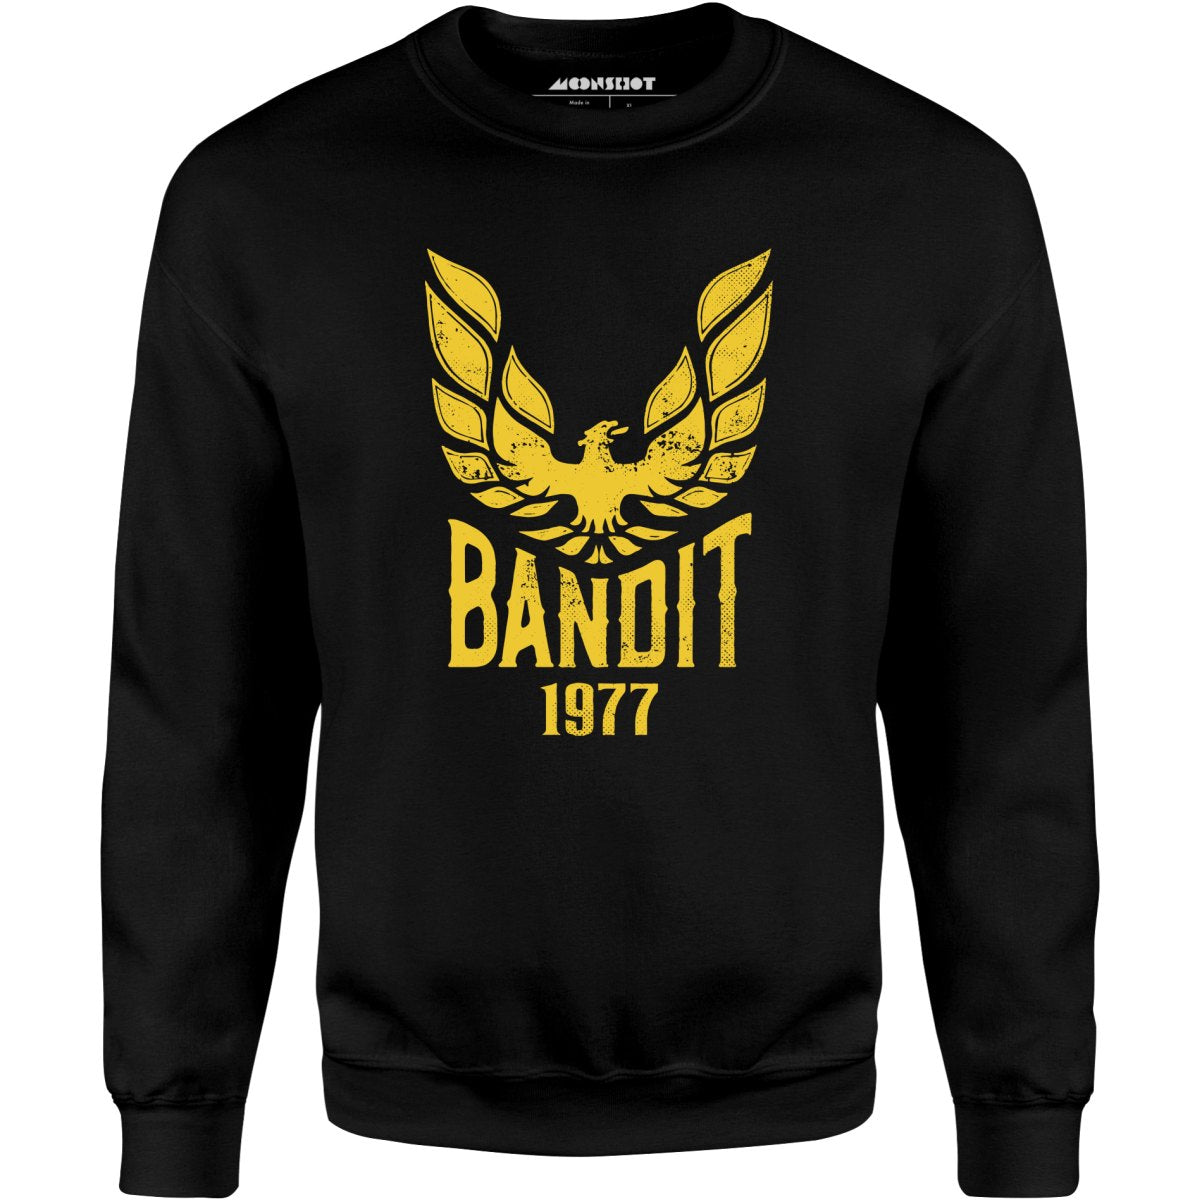 Bandit 1977 - Unisex Sweatshirt